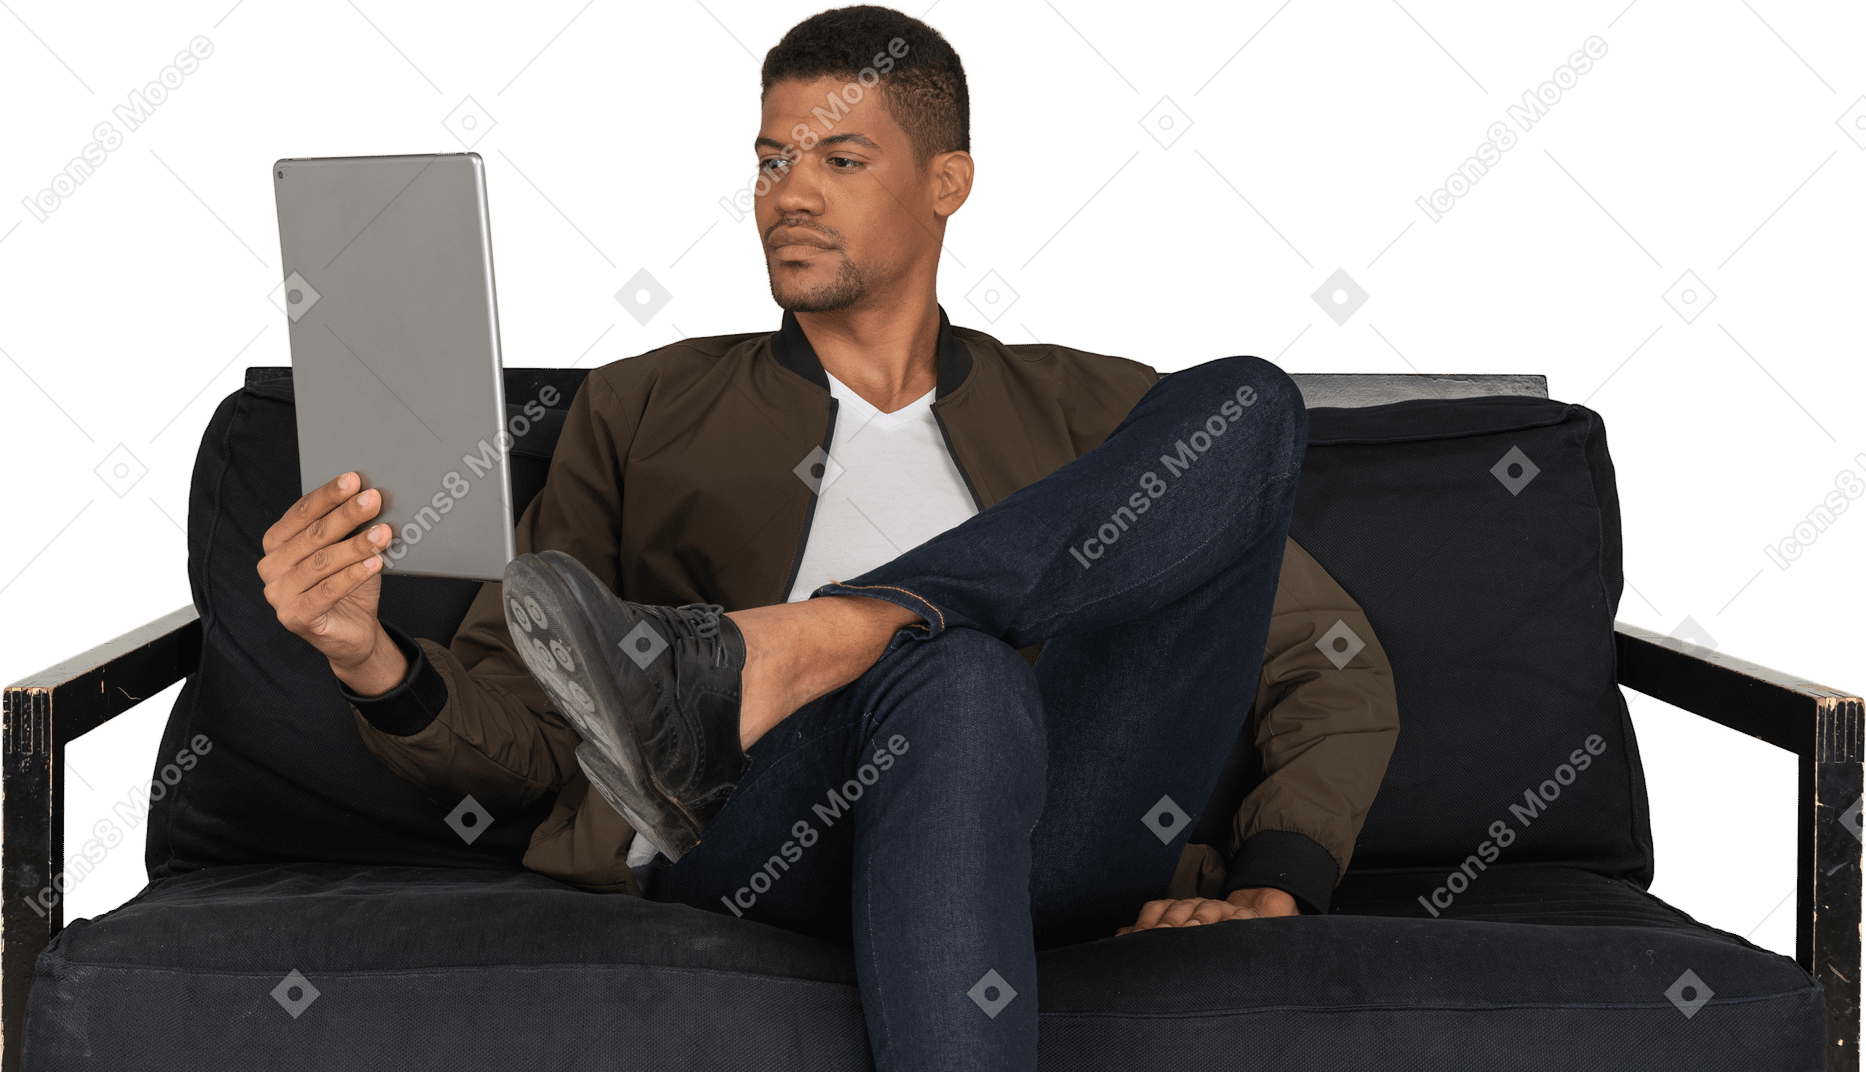 Vista frontal de um jovem entediado sentado em um sofá enquanto assiste ao tablet